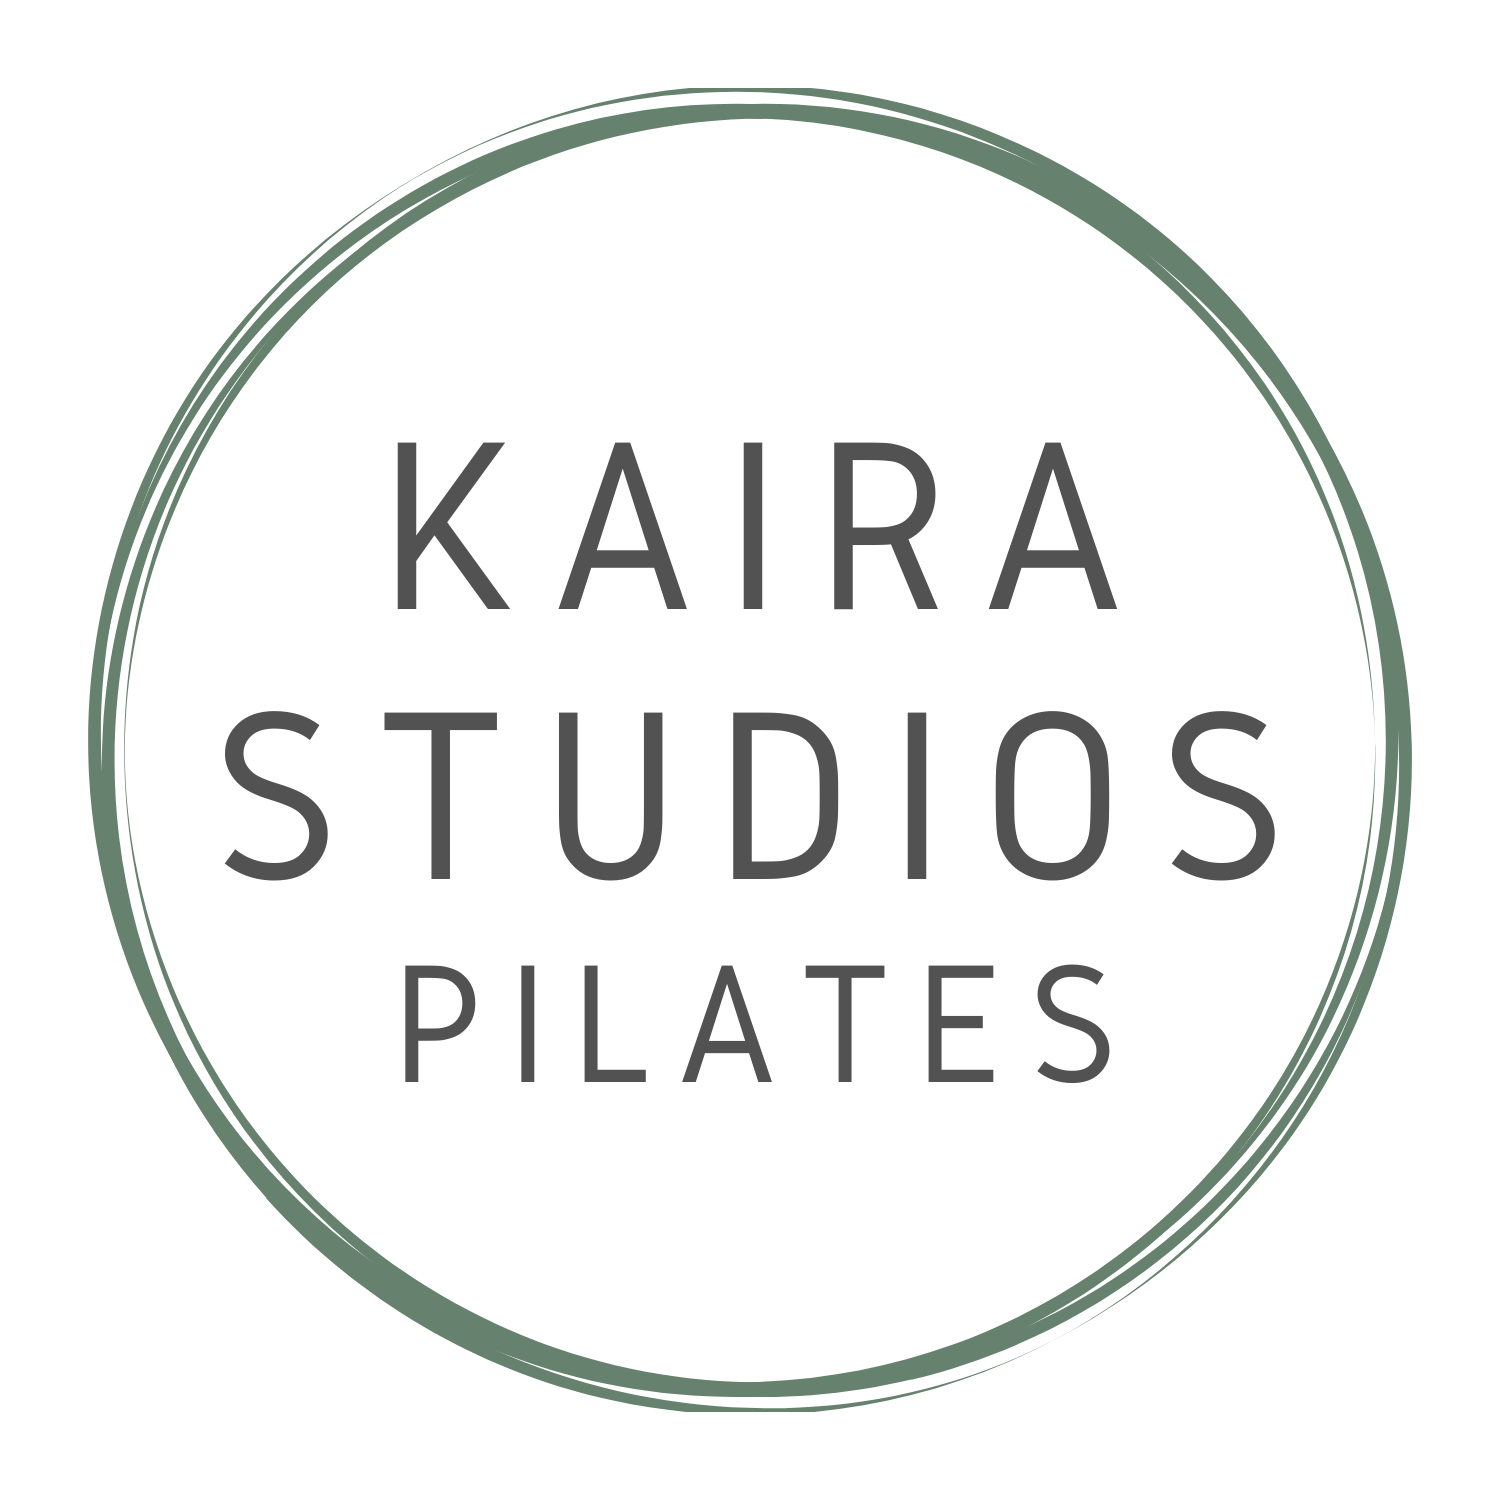 Kaira Studios Pilates